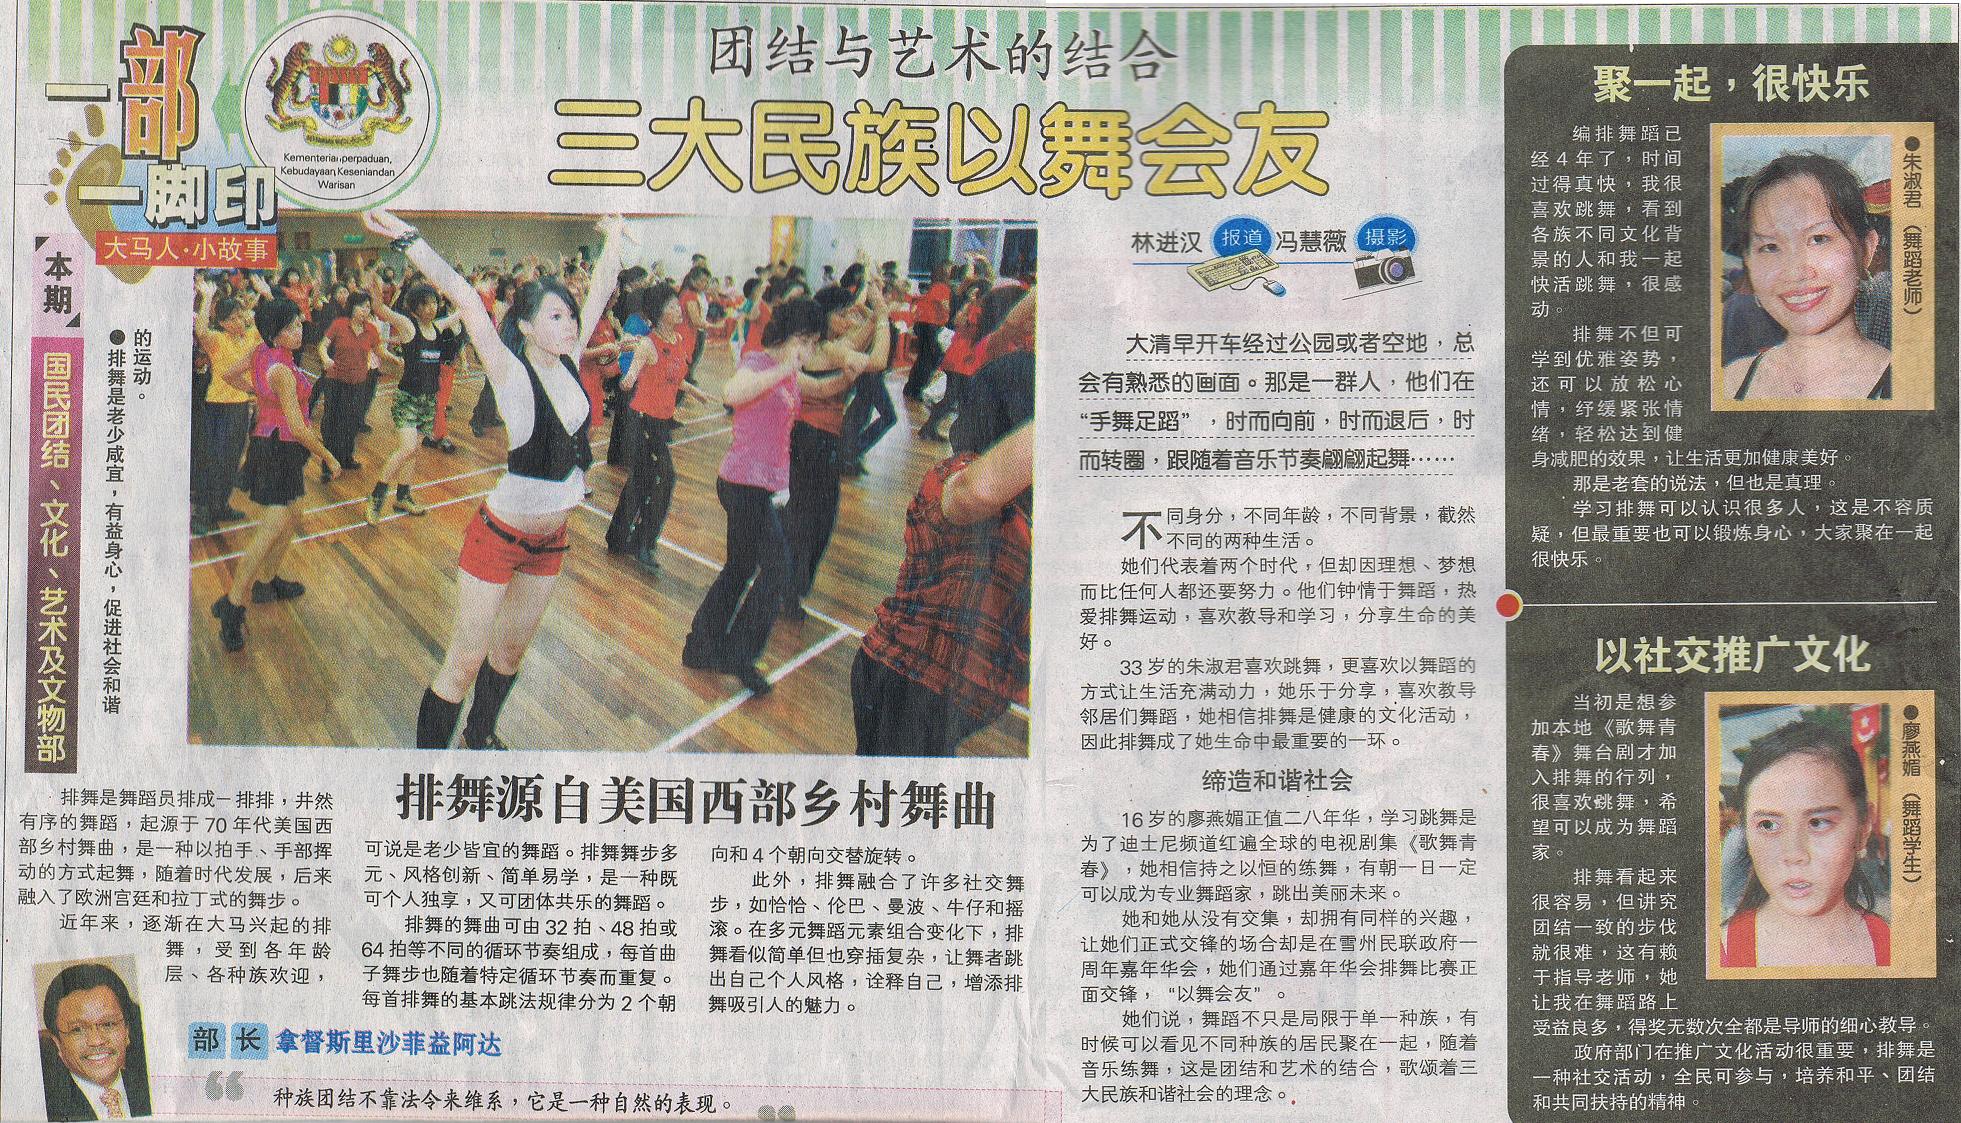 Nanyang Daily 4 April 2009